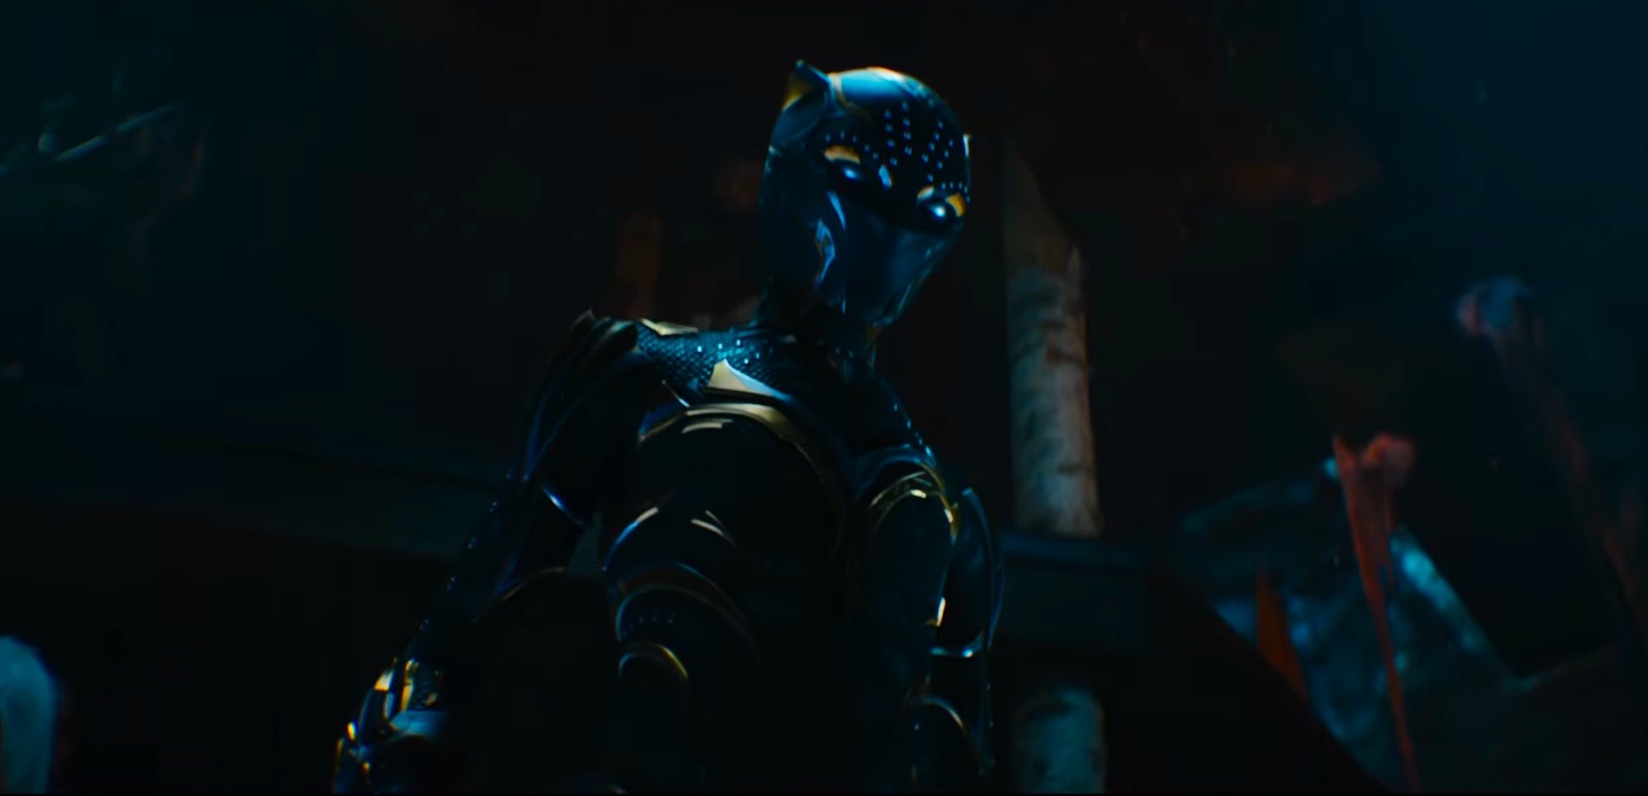 Показана новая Черная пантера в киновселенной Marvel